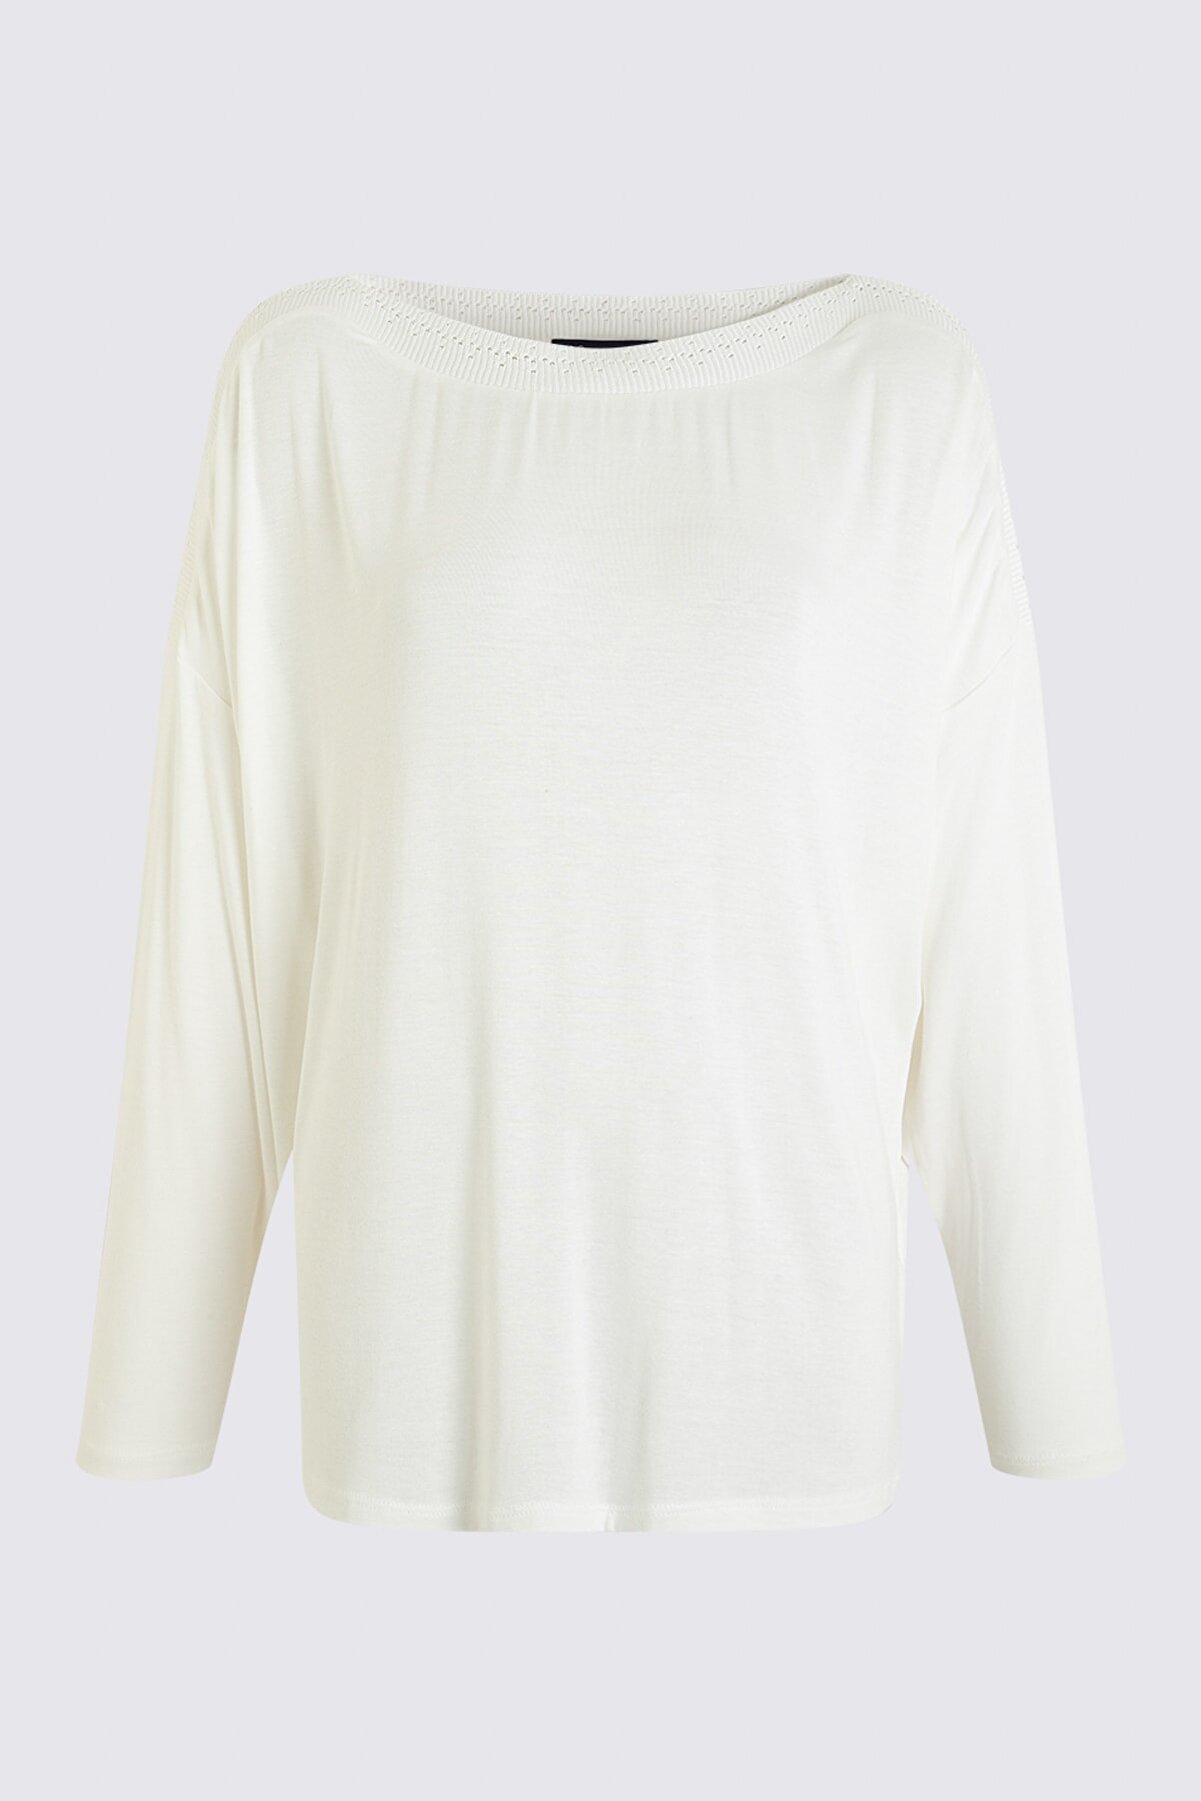 Marks & Spencer Kadın Beyaz Yarasa Kollu Bluz T41005052X